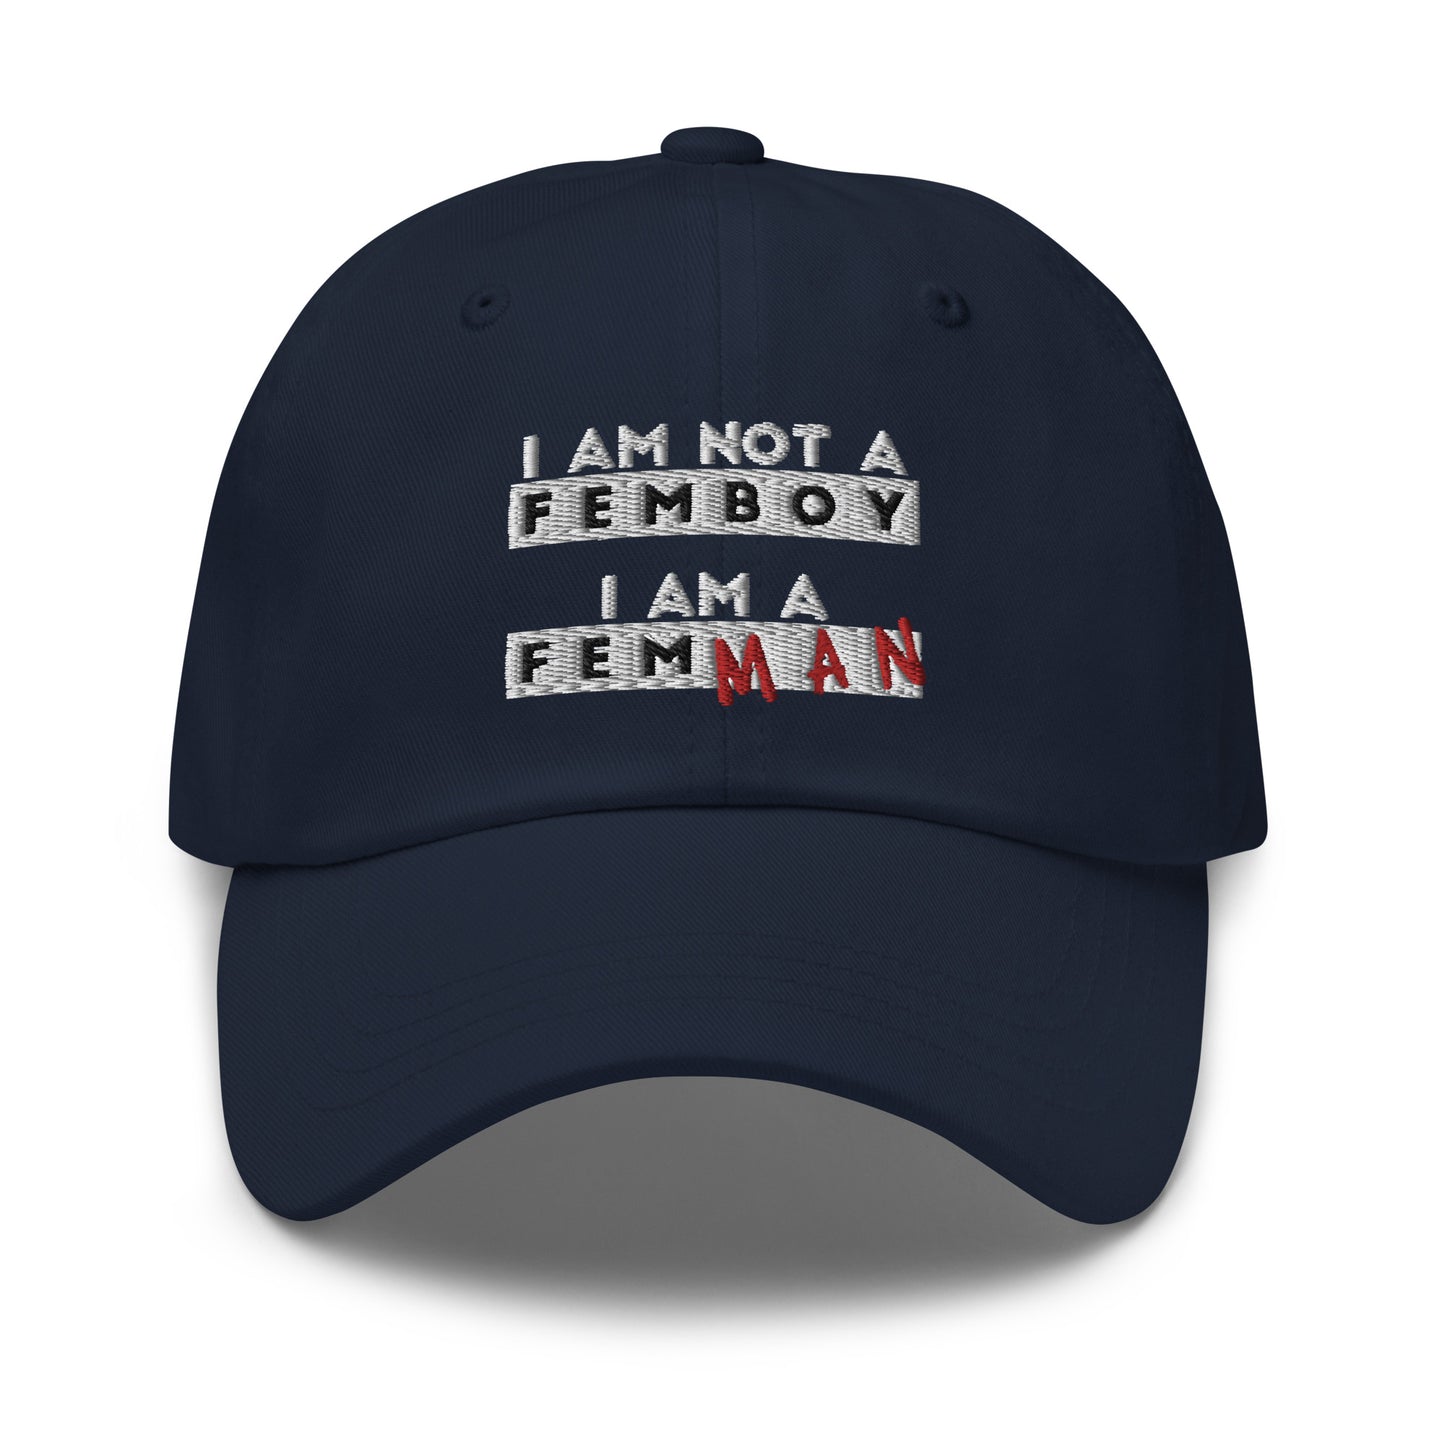 I Am Not a Femboy I Am a Femman hat